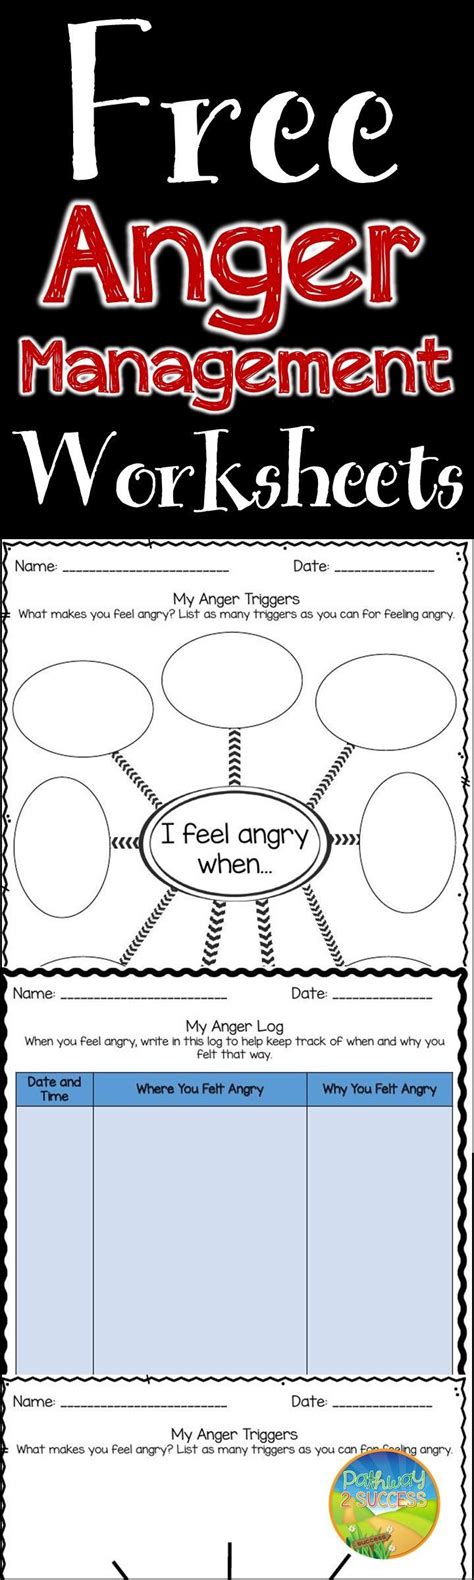 Anger Management Worksheets For Elementary Students Thekidsworksheet